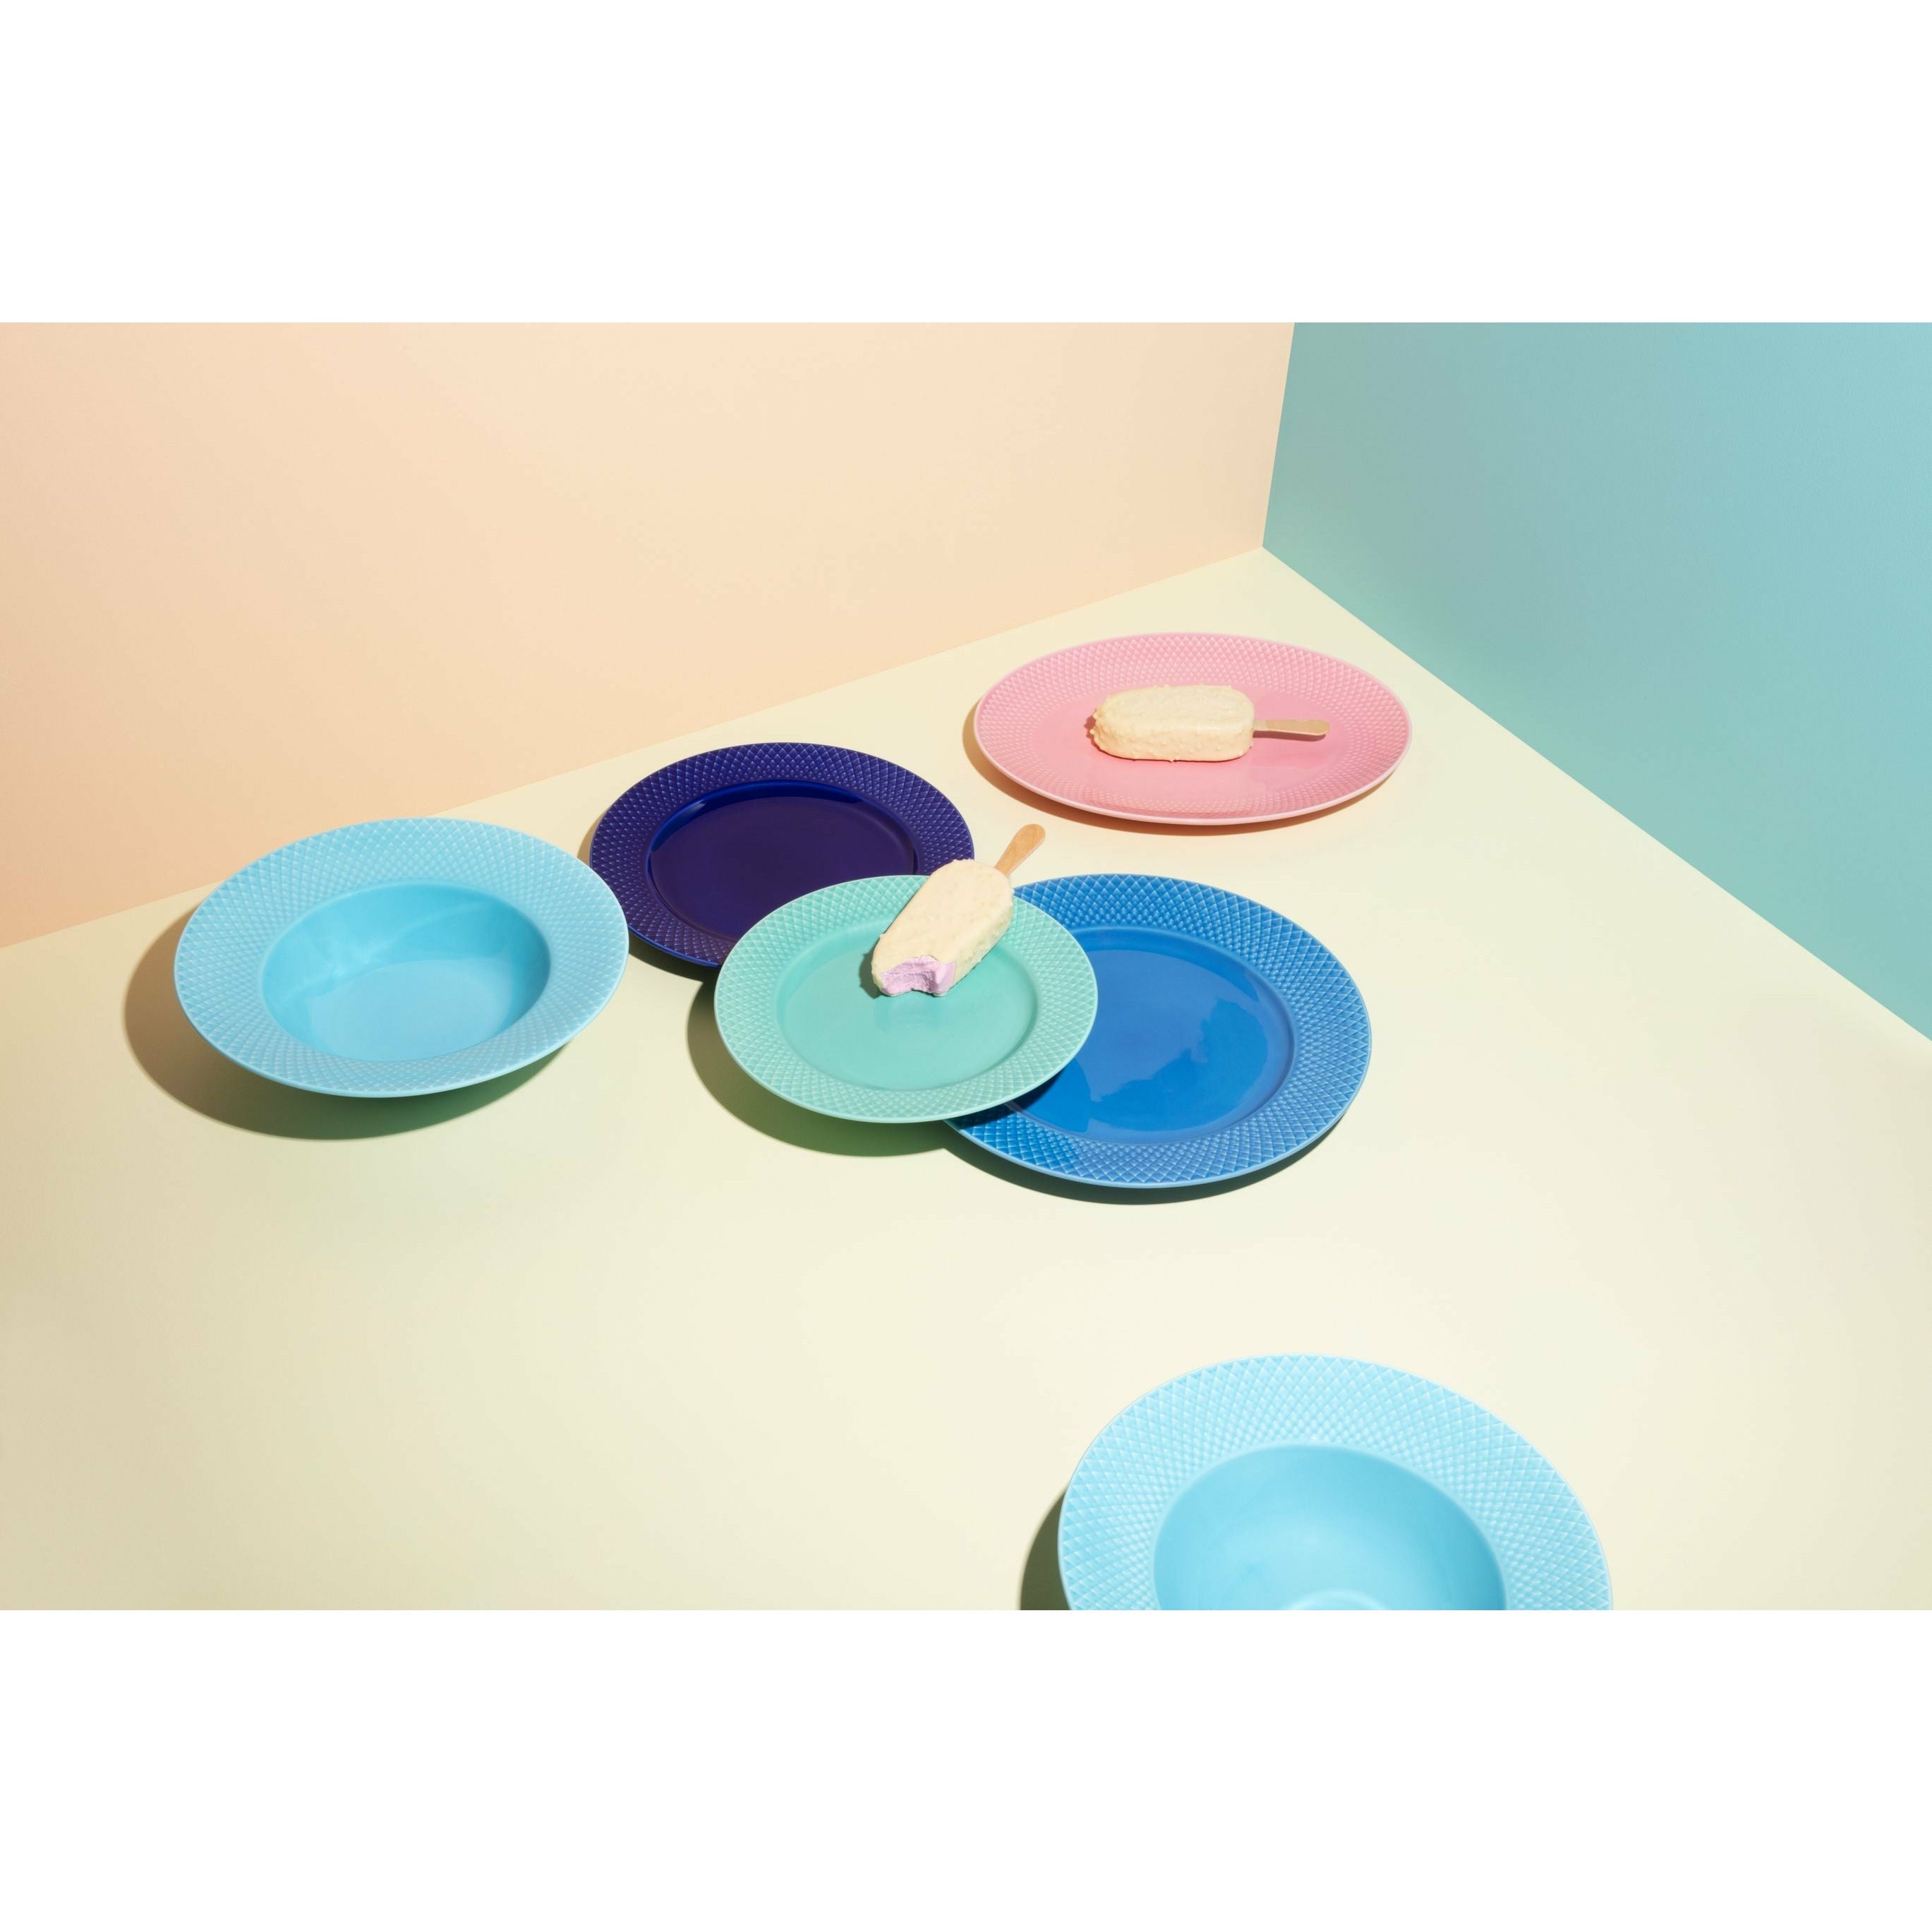 Lyngby Porcelæn Rhombe Color Oval Platte 28,5x21,5 Cm, Rosa